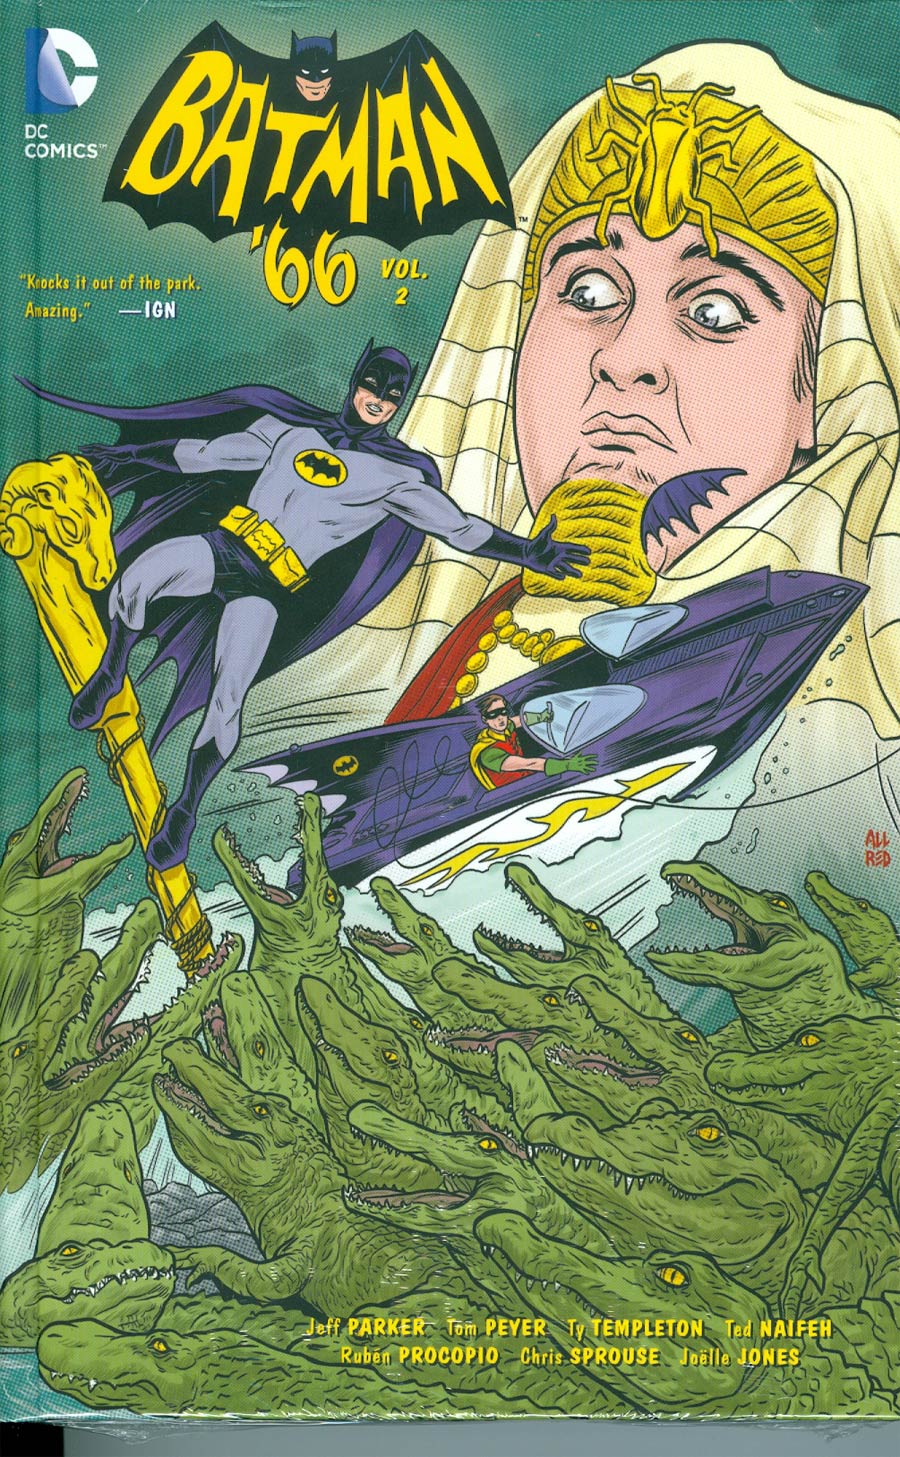 Batman 66 Vol 2 HC